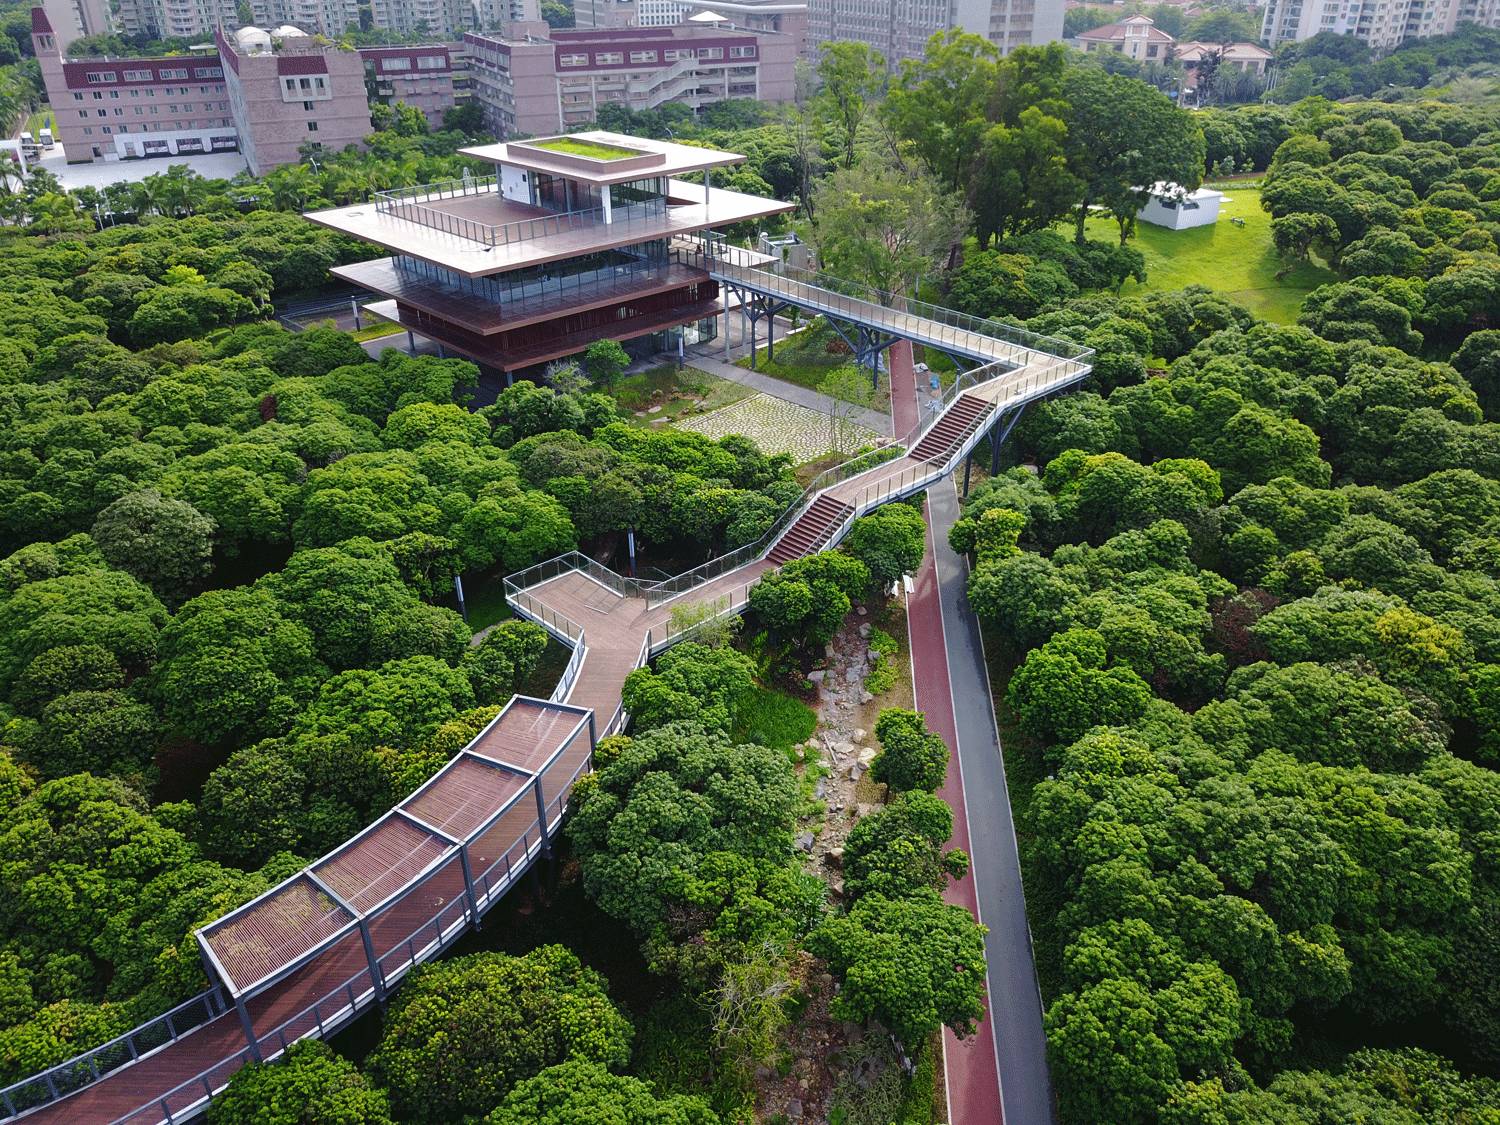 湖南省建筑科学研究院有限责任公司